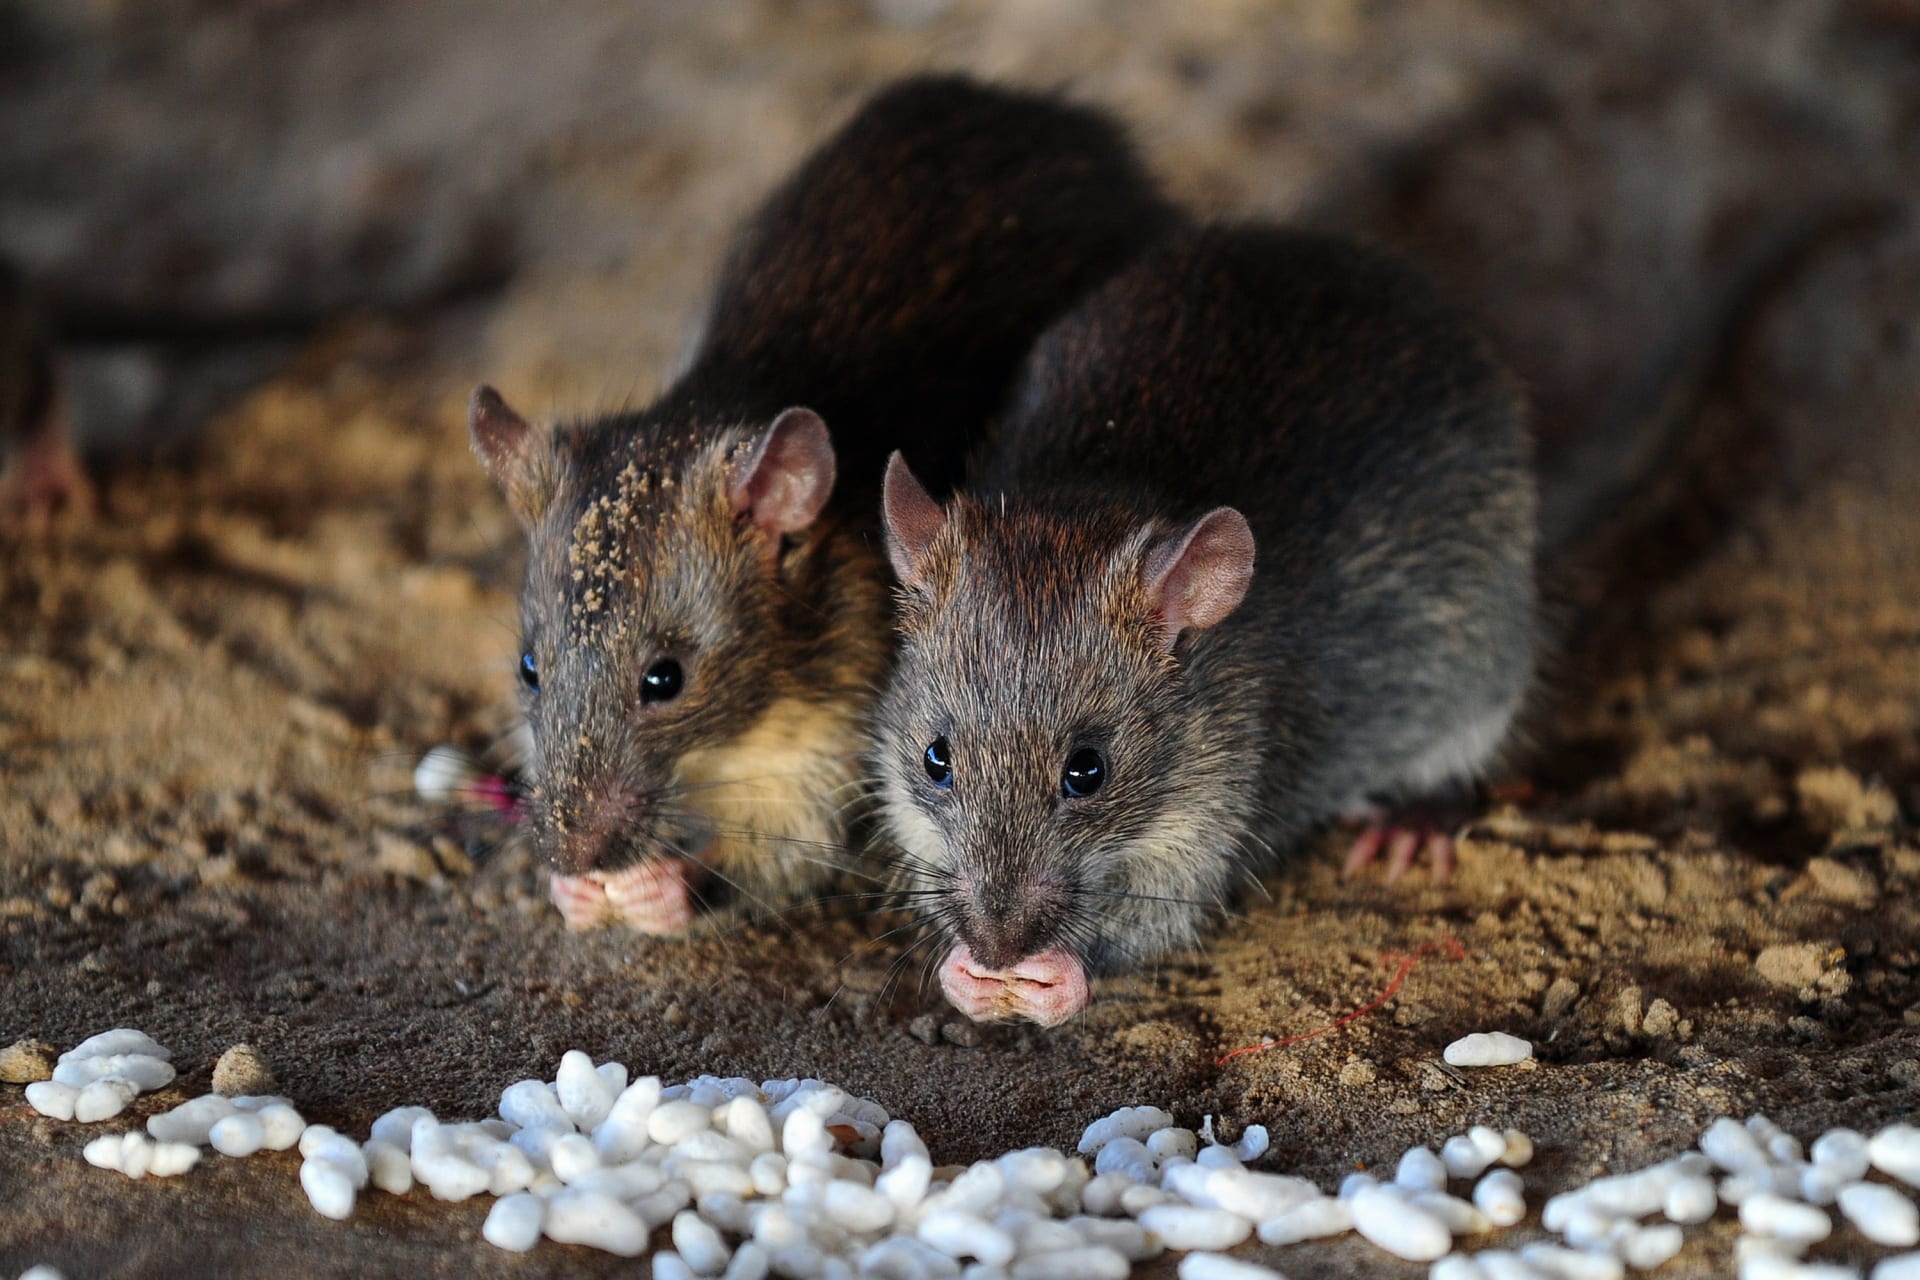 Tikus nginfèksi manungsa karo hepatitis ... lan ora ana sing ngerti kepiye kedadeyan kasebut - CNN Arab